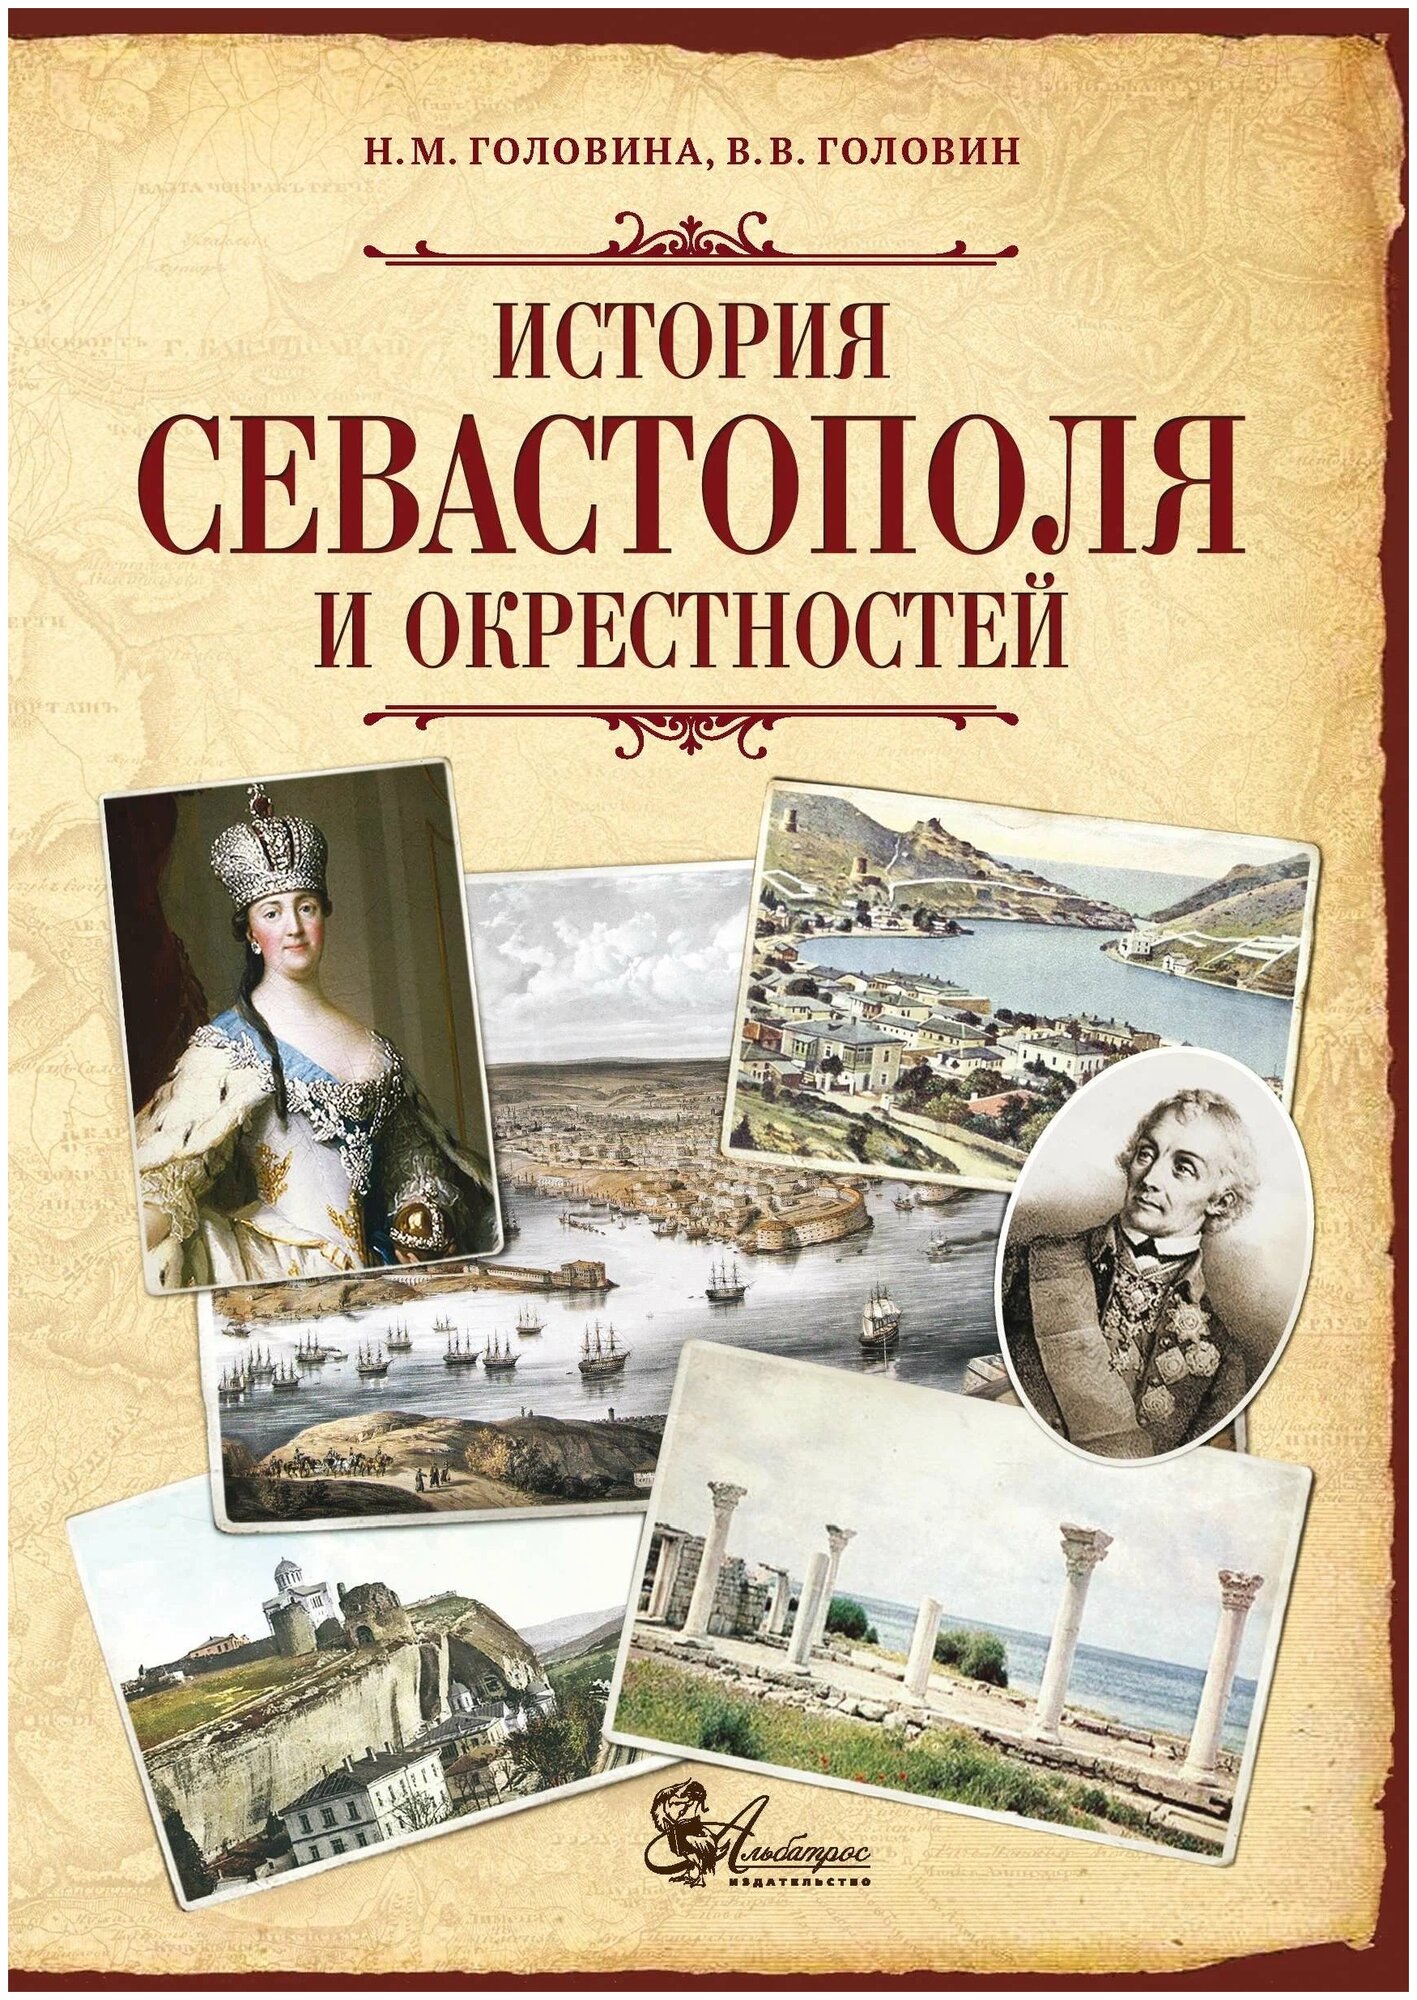 История Севастополя и окрестностей - фото №1